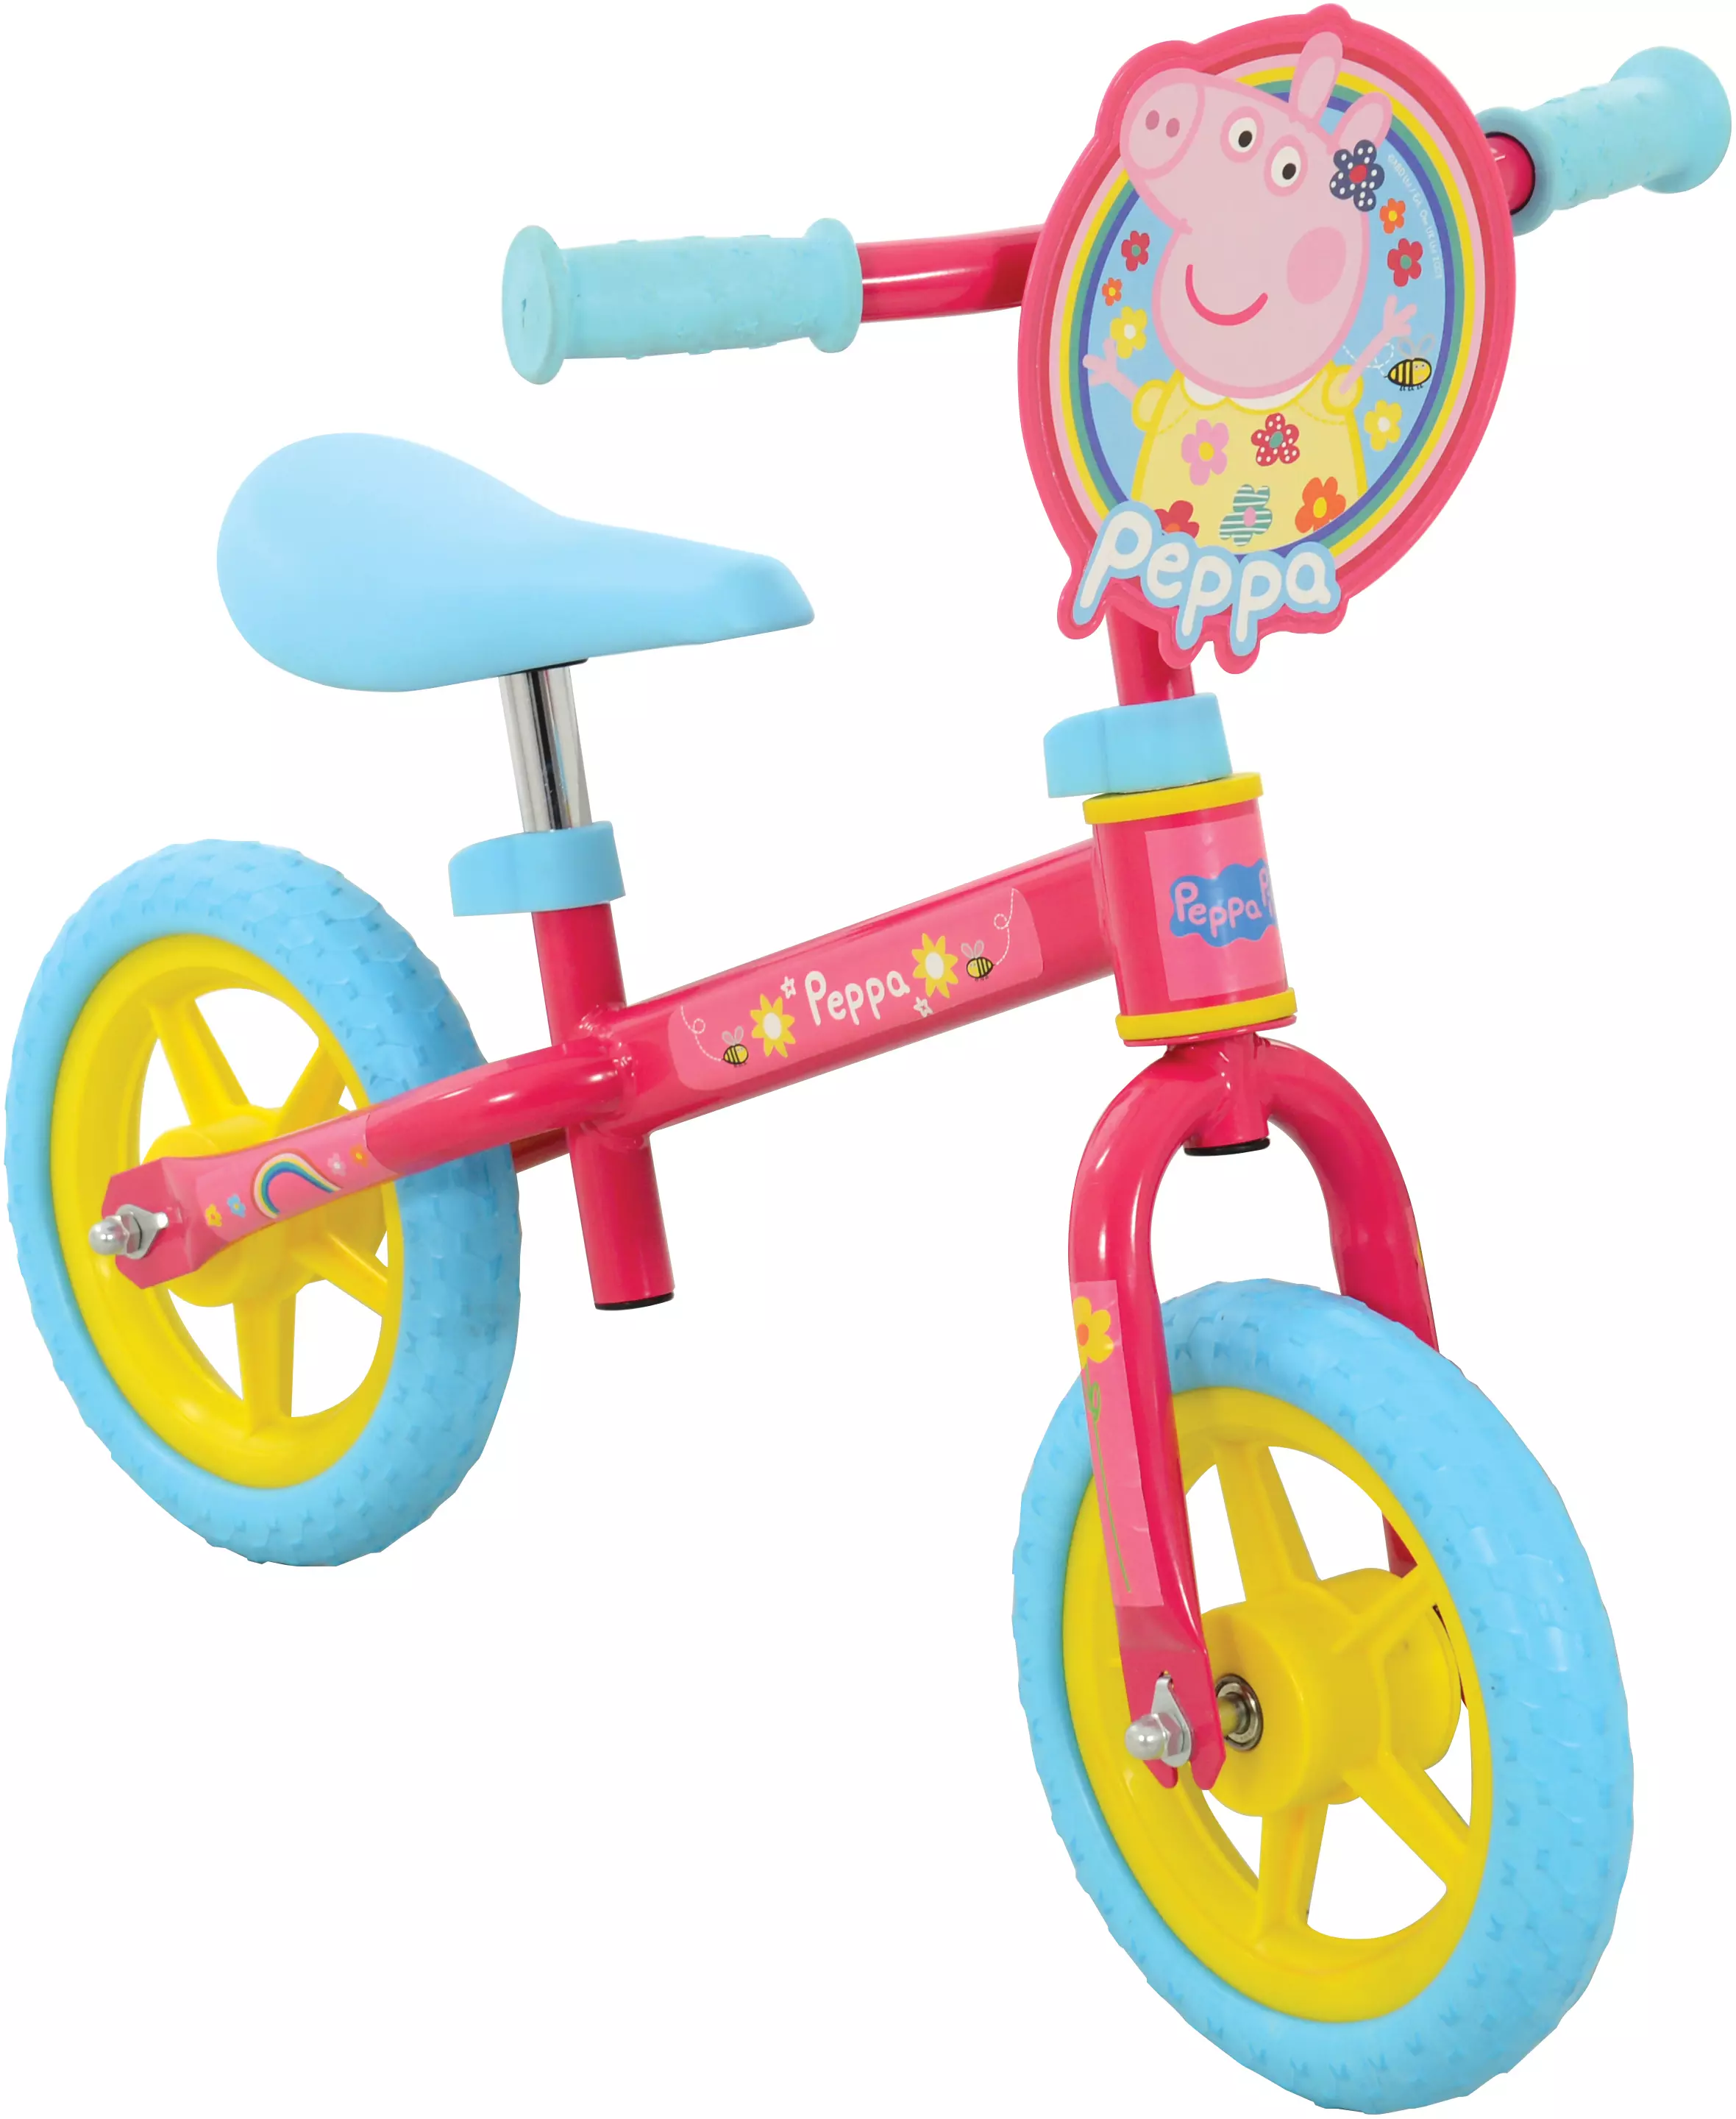 peppa pig bike toys r us